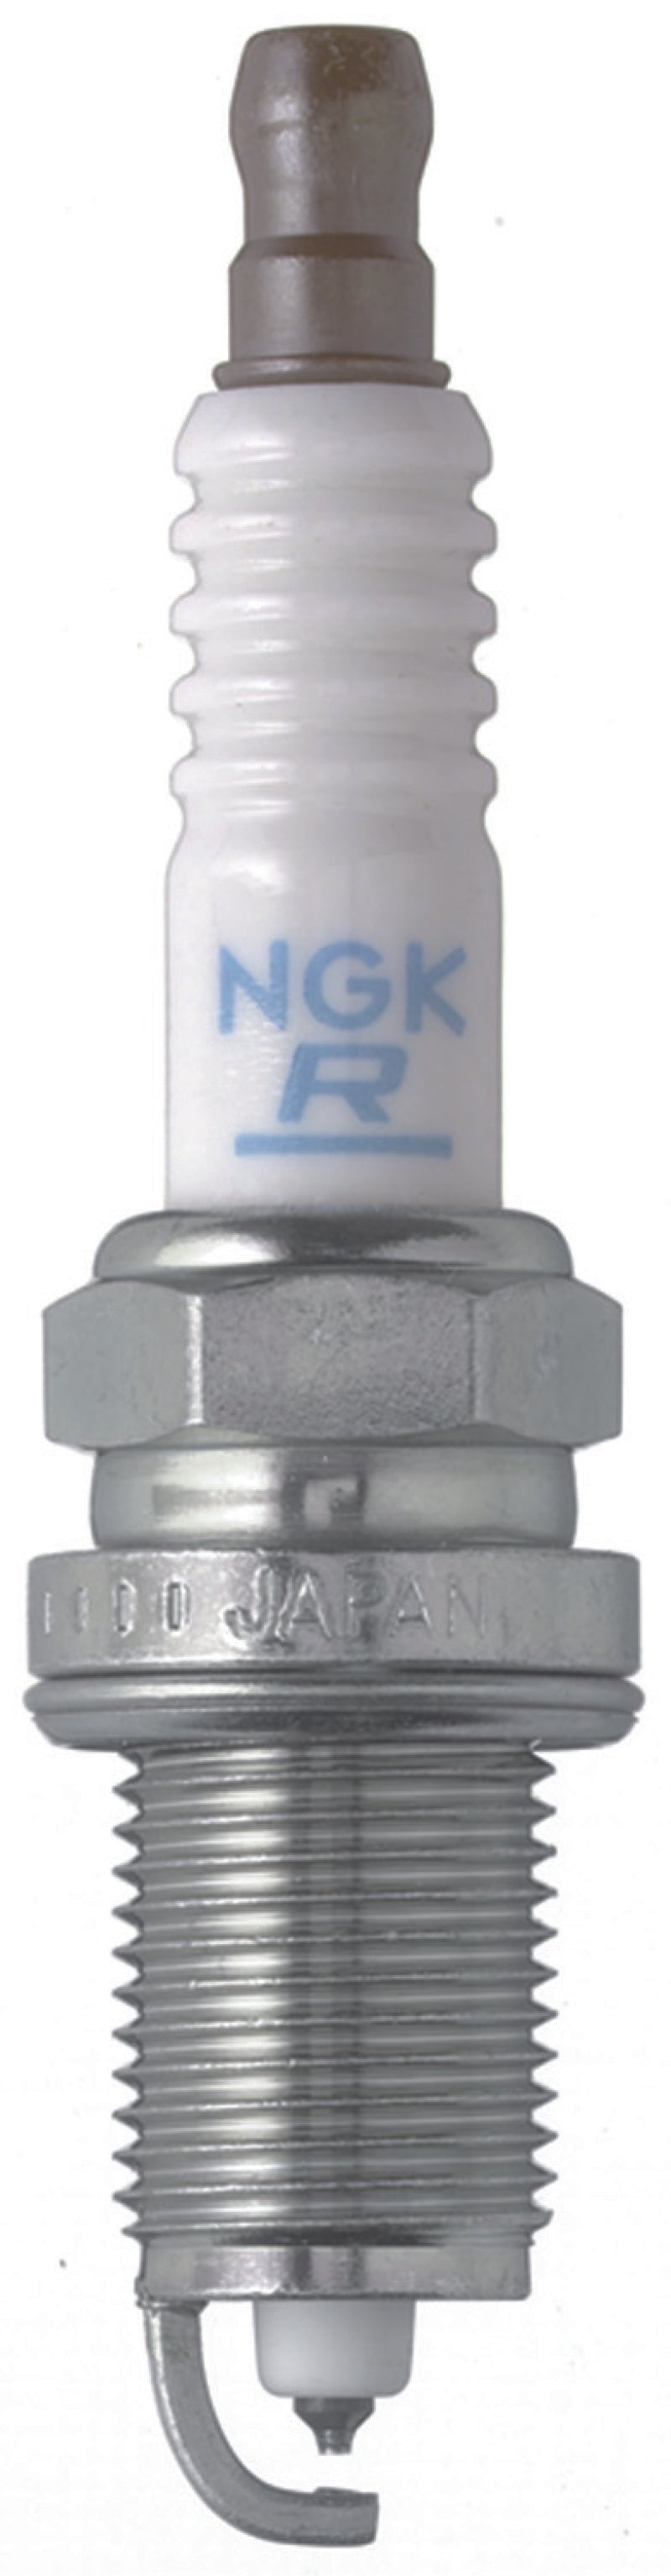 NGK Laser Platinum Spark Plug Box of 4 (PZFR6H) -  Shop now at Performance Car Parts